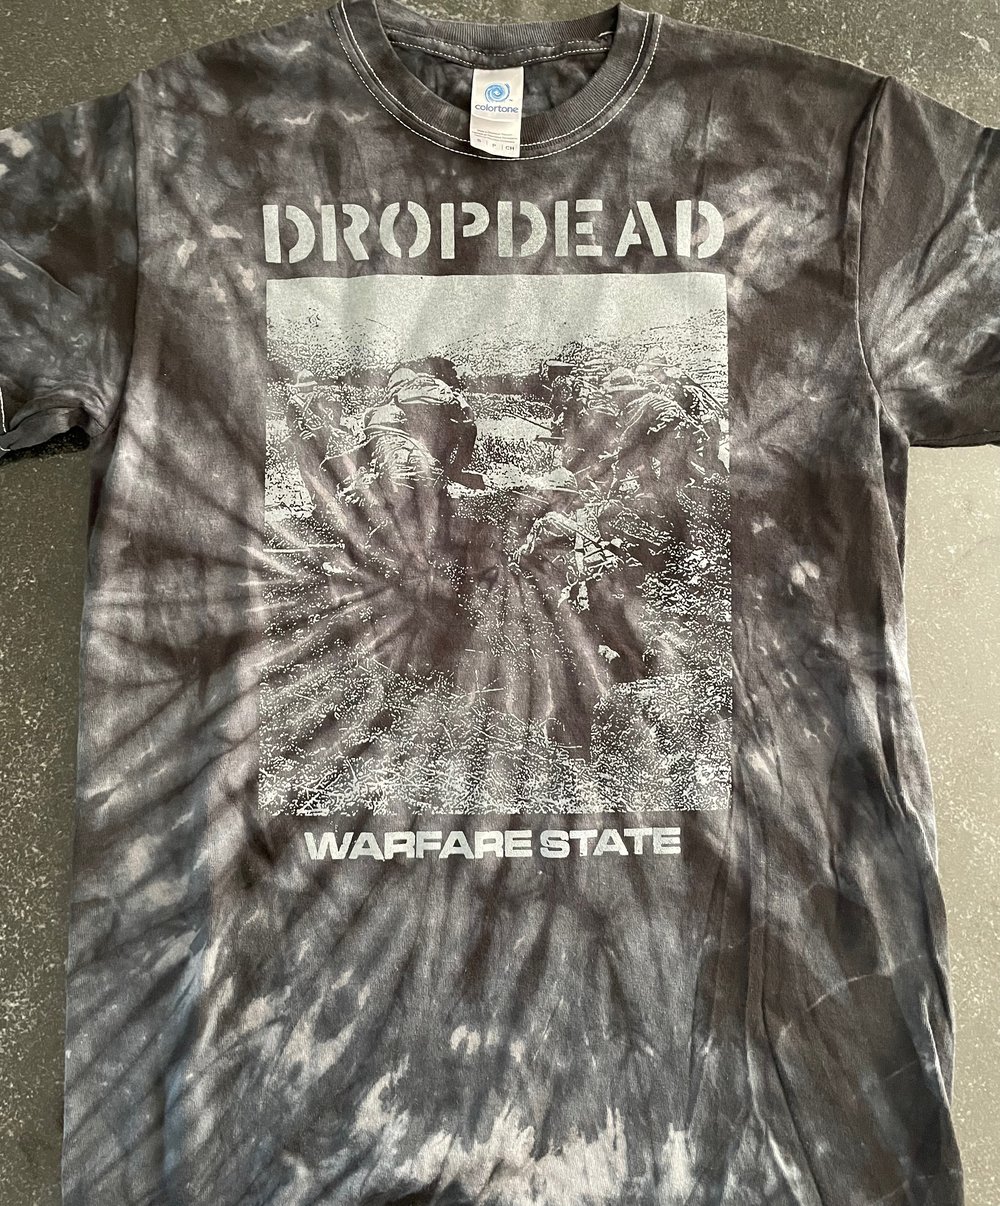 DROPDEAD "Warfare State" TIE DYE Tshirt